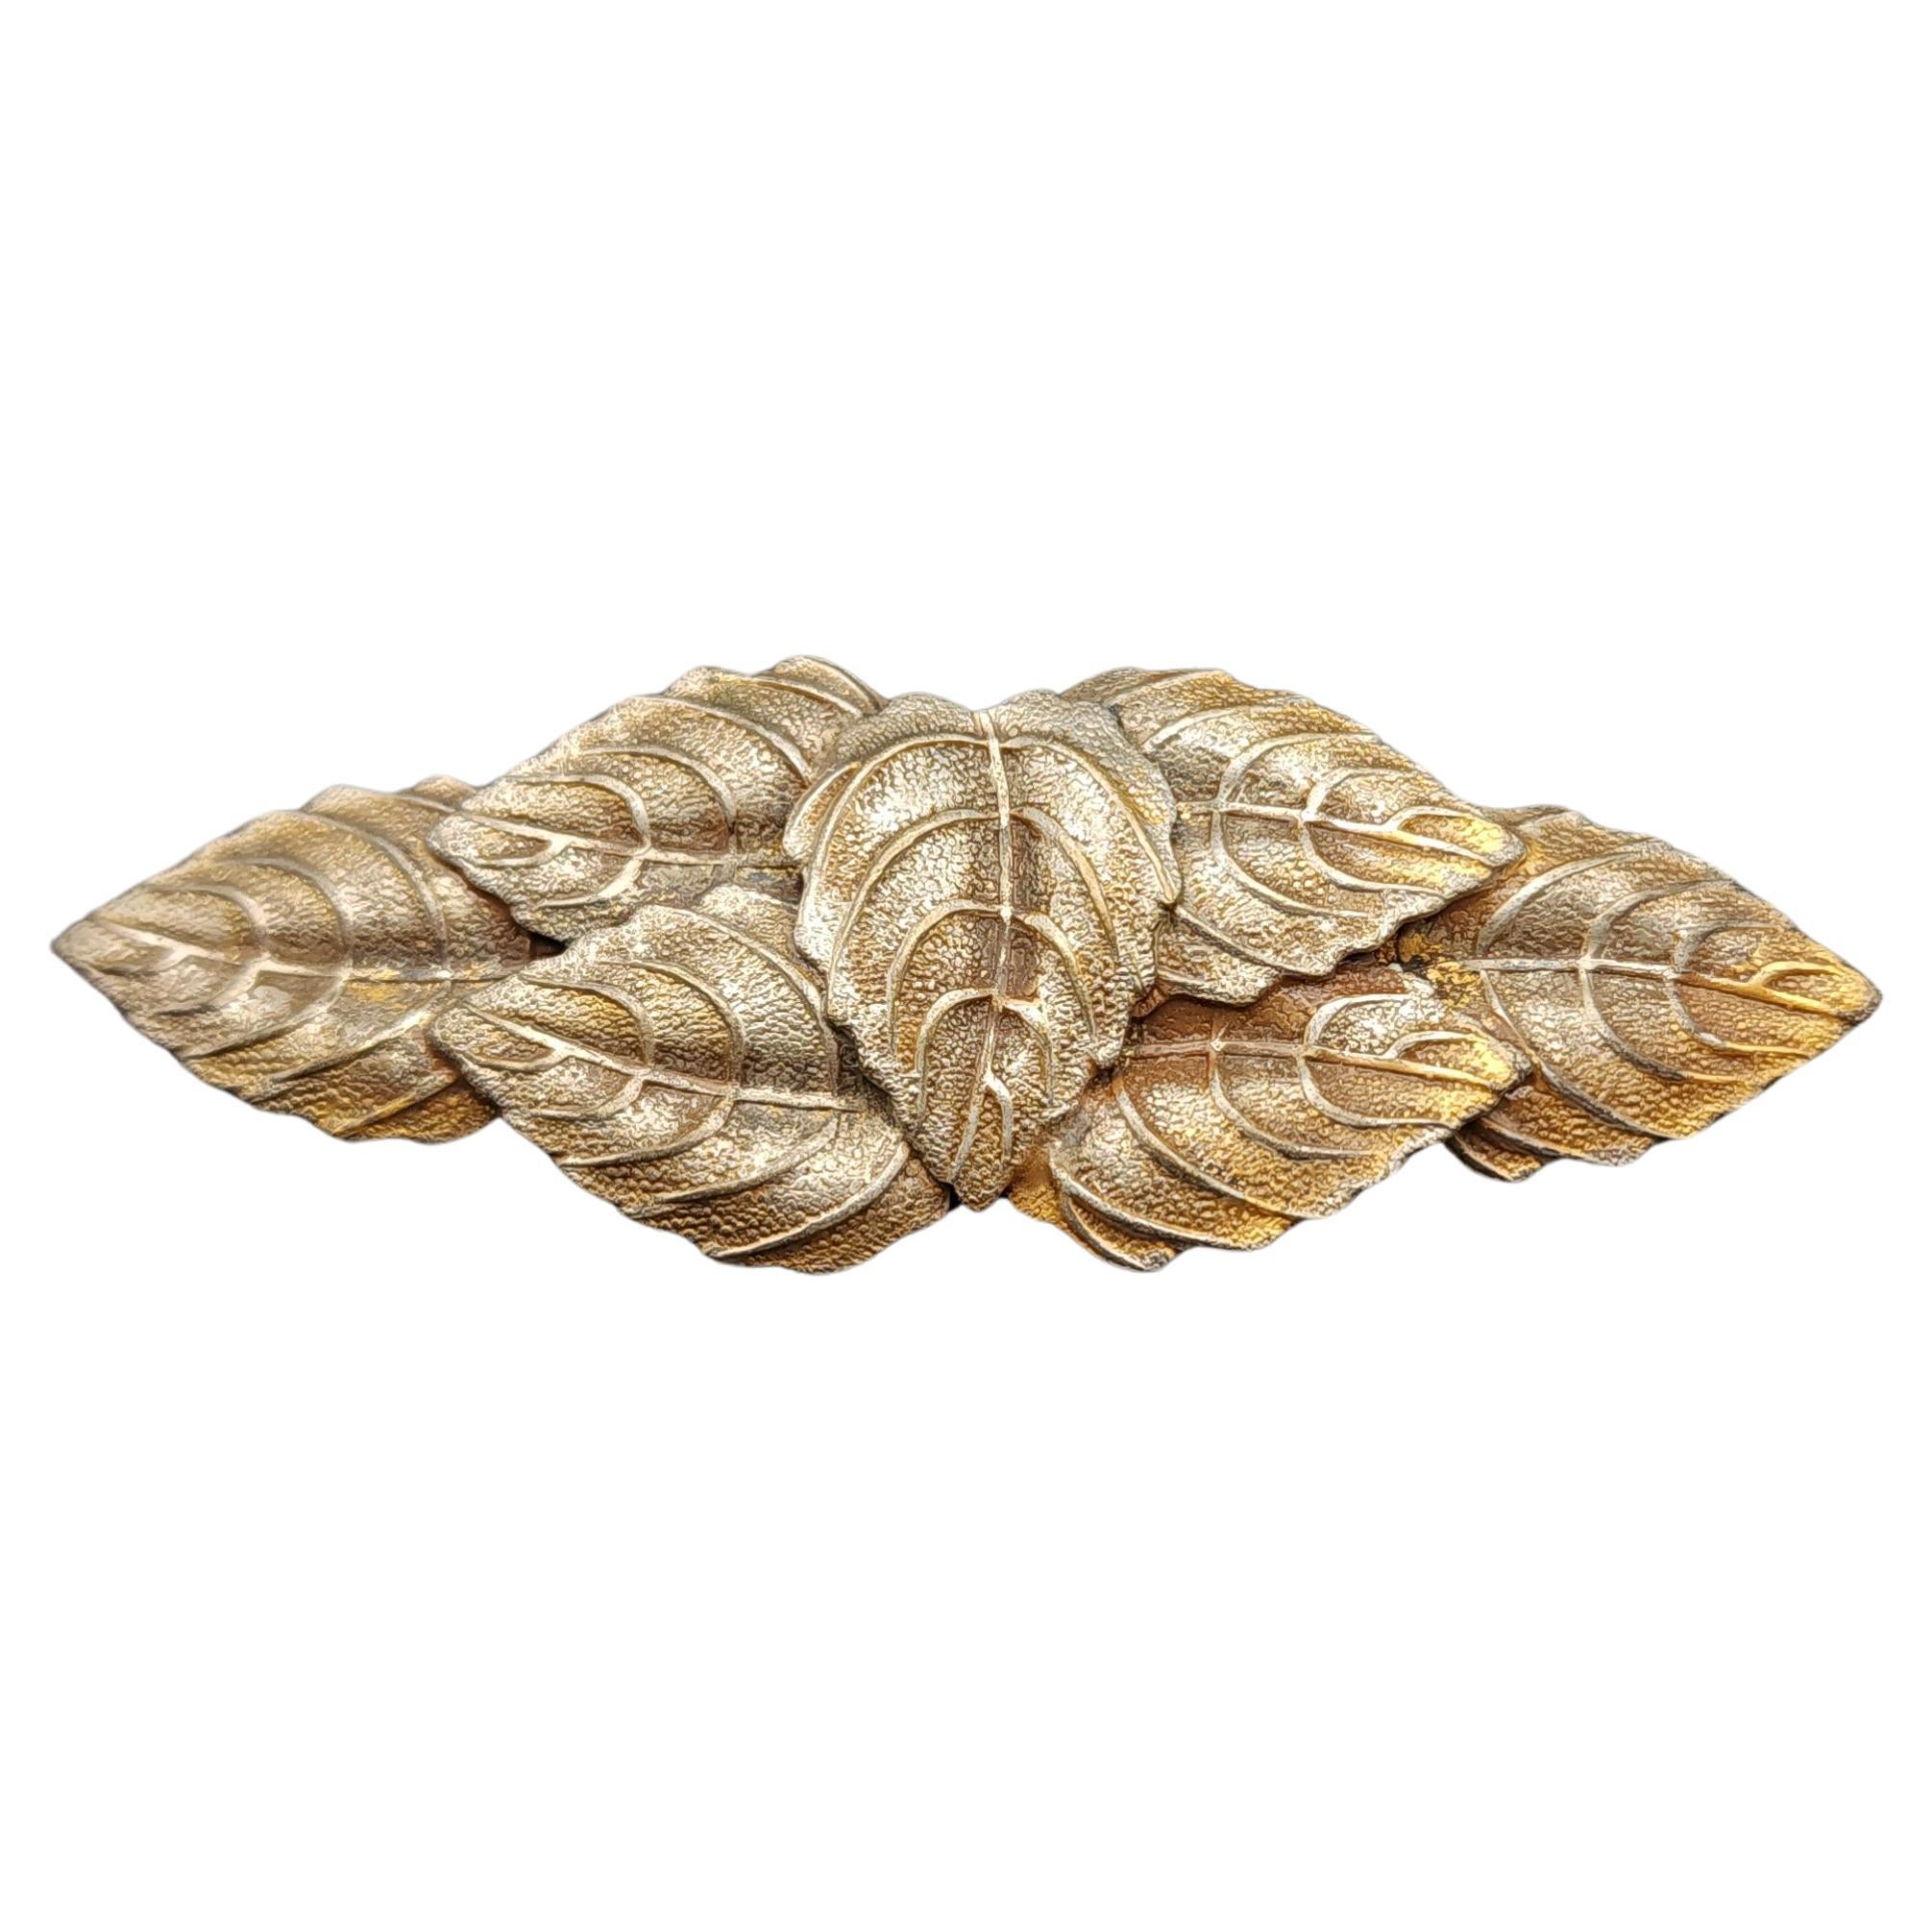 Vintage Gold-Plated Leaf Cluster Brooch - Elegant 7 Leaf Design, 20th Century For Sale